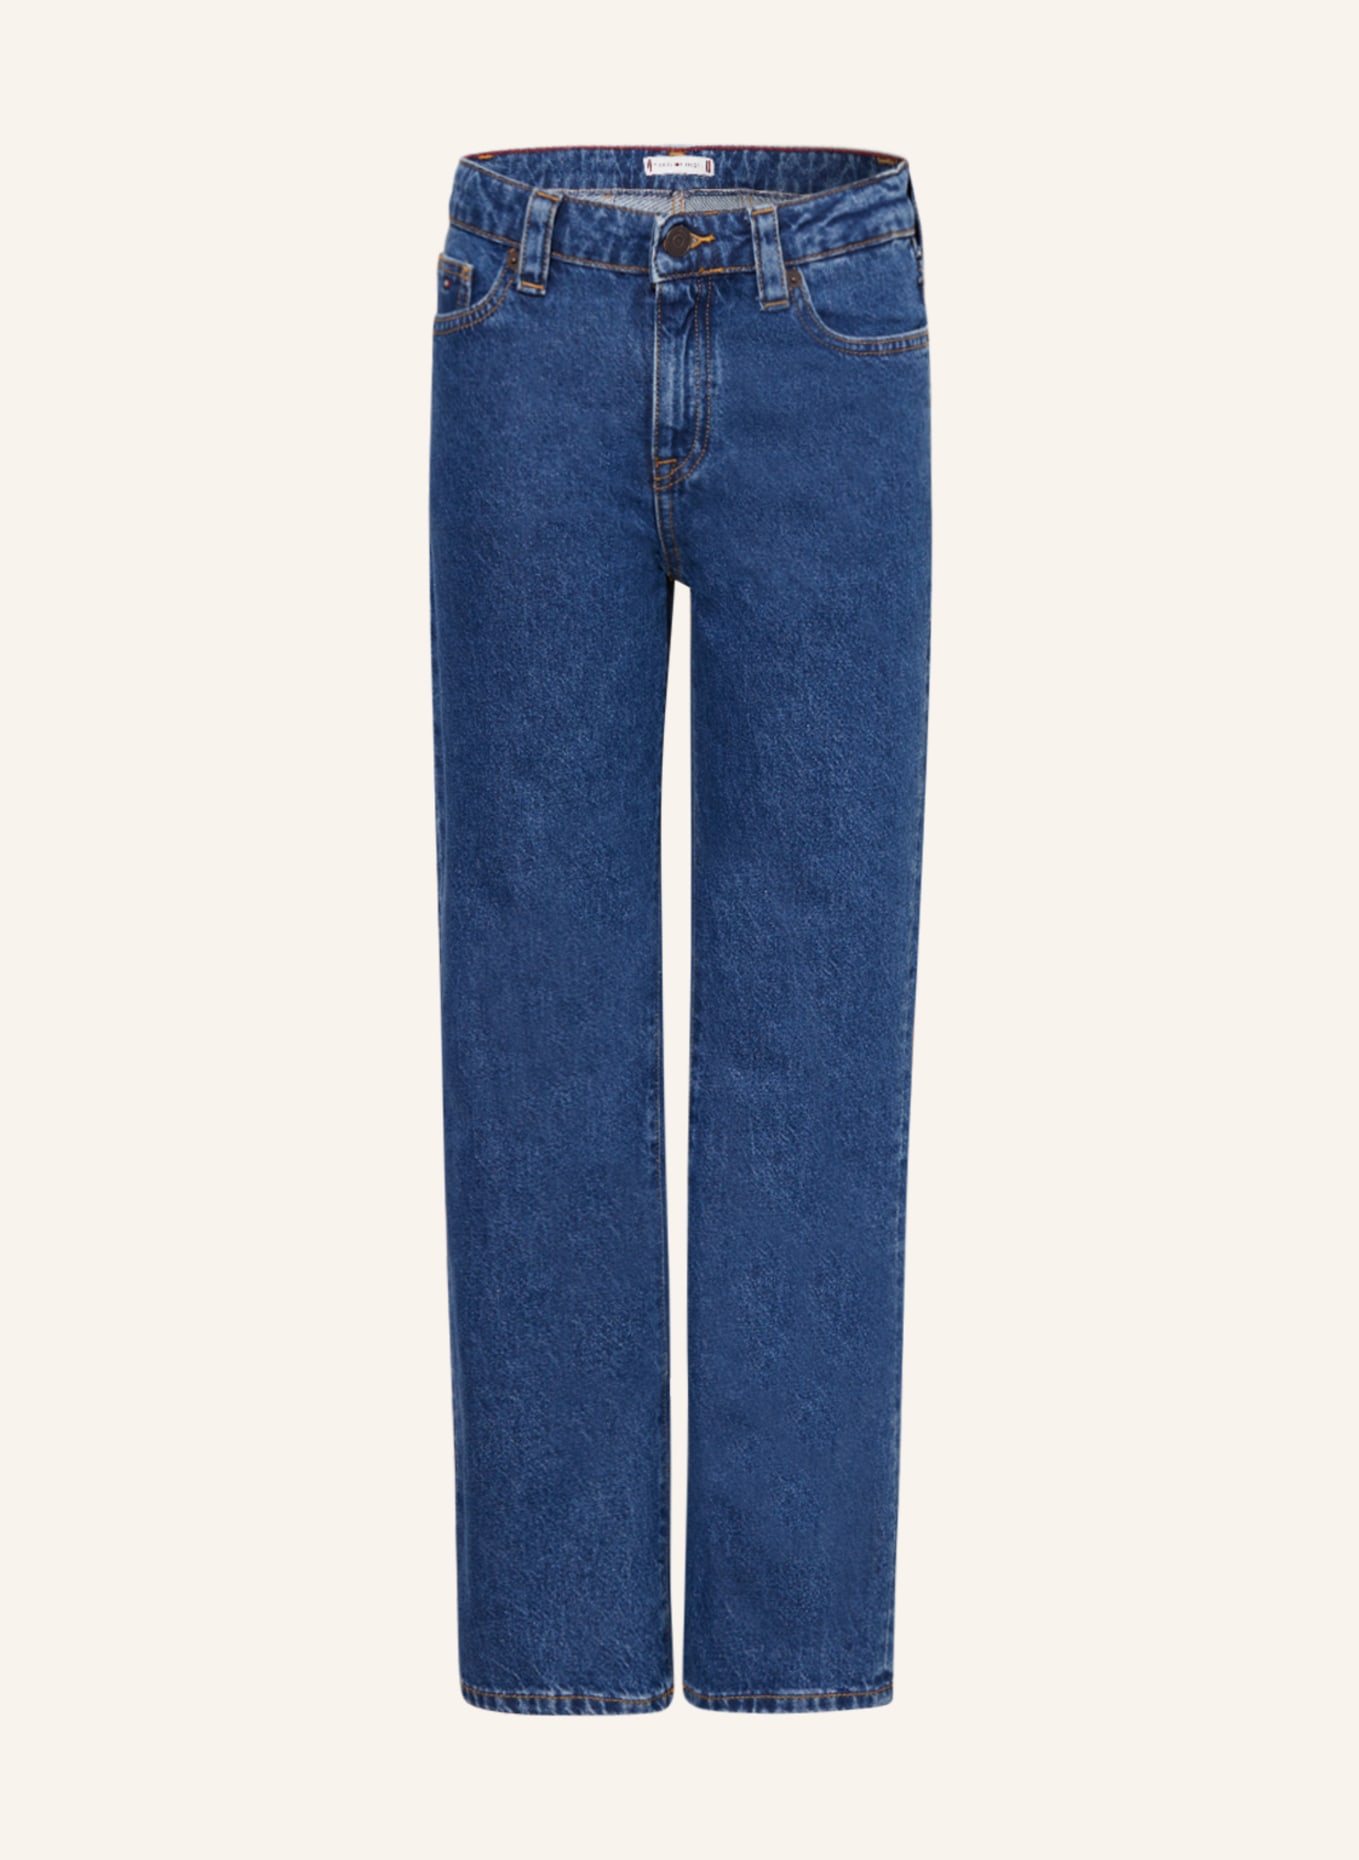 TOMMY HILFIGER Jeans Straight Fit, Farbe: YBH Saltpeppermedium (Bild 1)